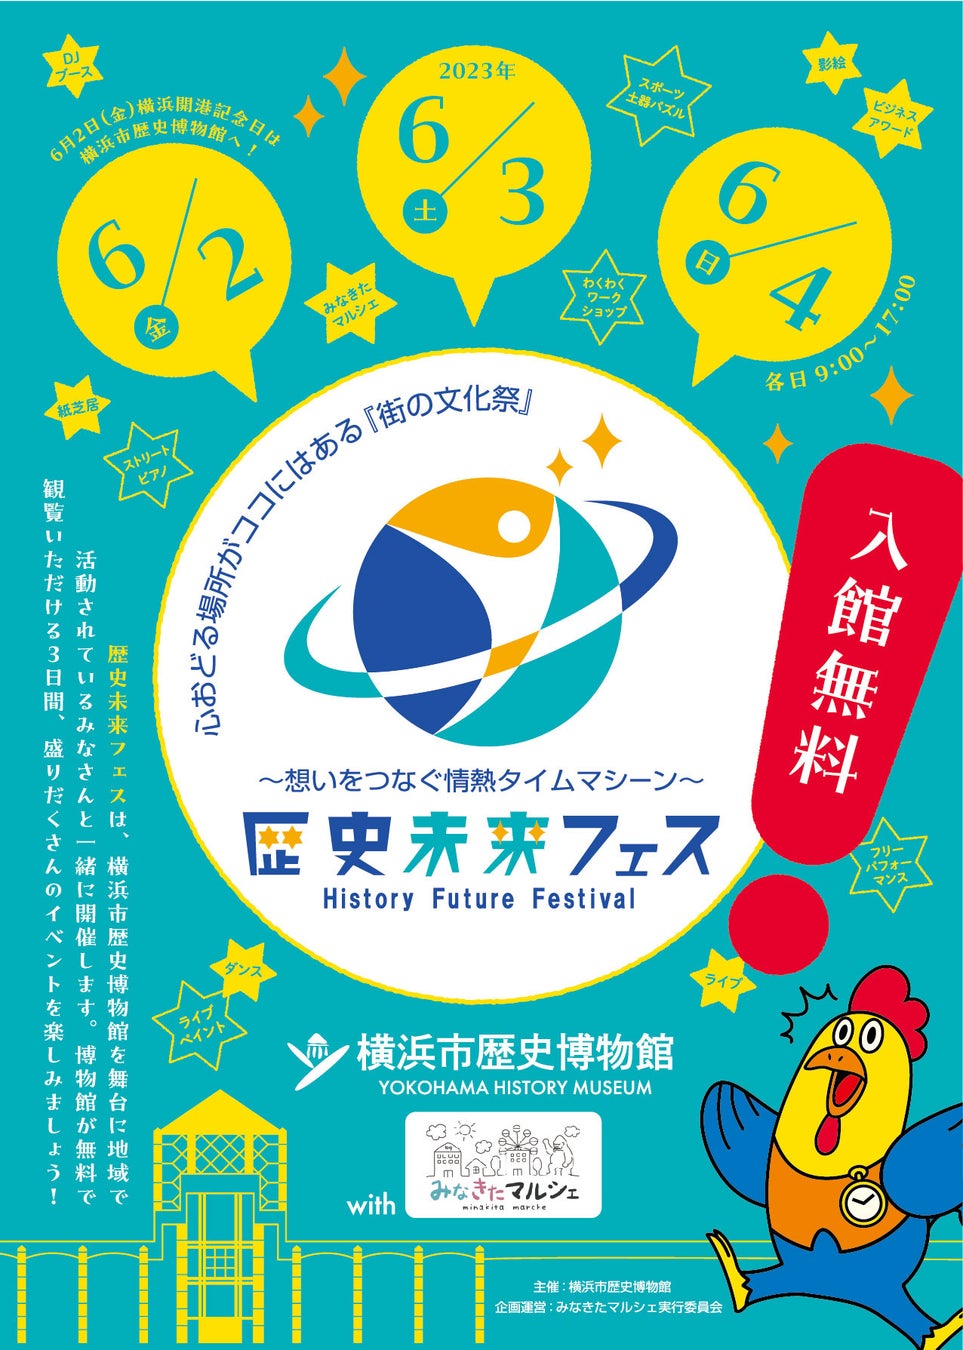 〔6月2・3・4日〕「歴史未来フェス」開幕直前、開催プログラムのお知らせ【横浜市歴史博物館】